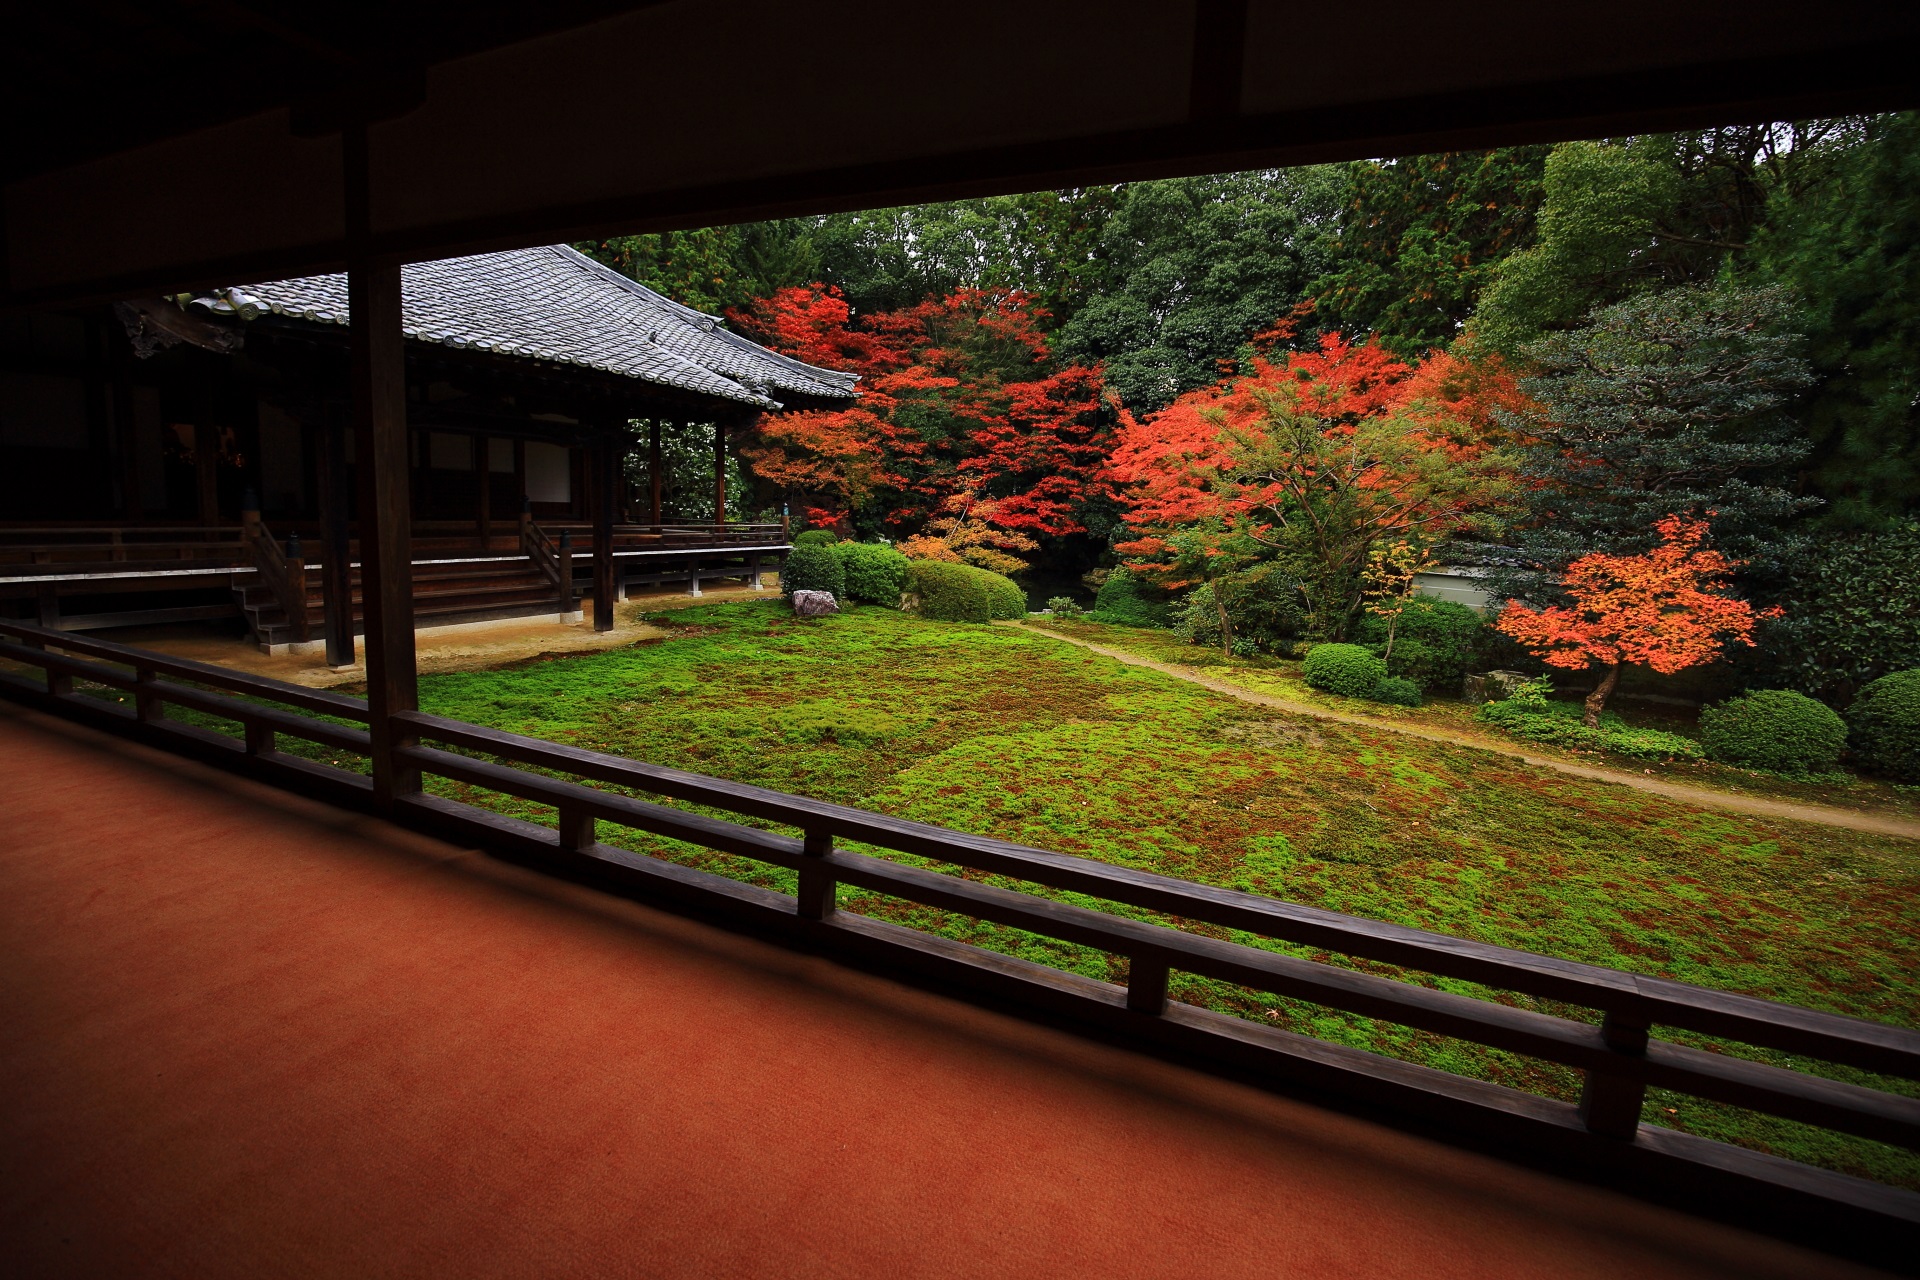 赤い絨毯が演出する縁側から眺めた鮮やかな紅葉